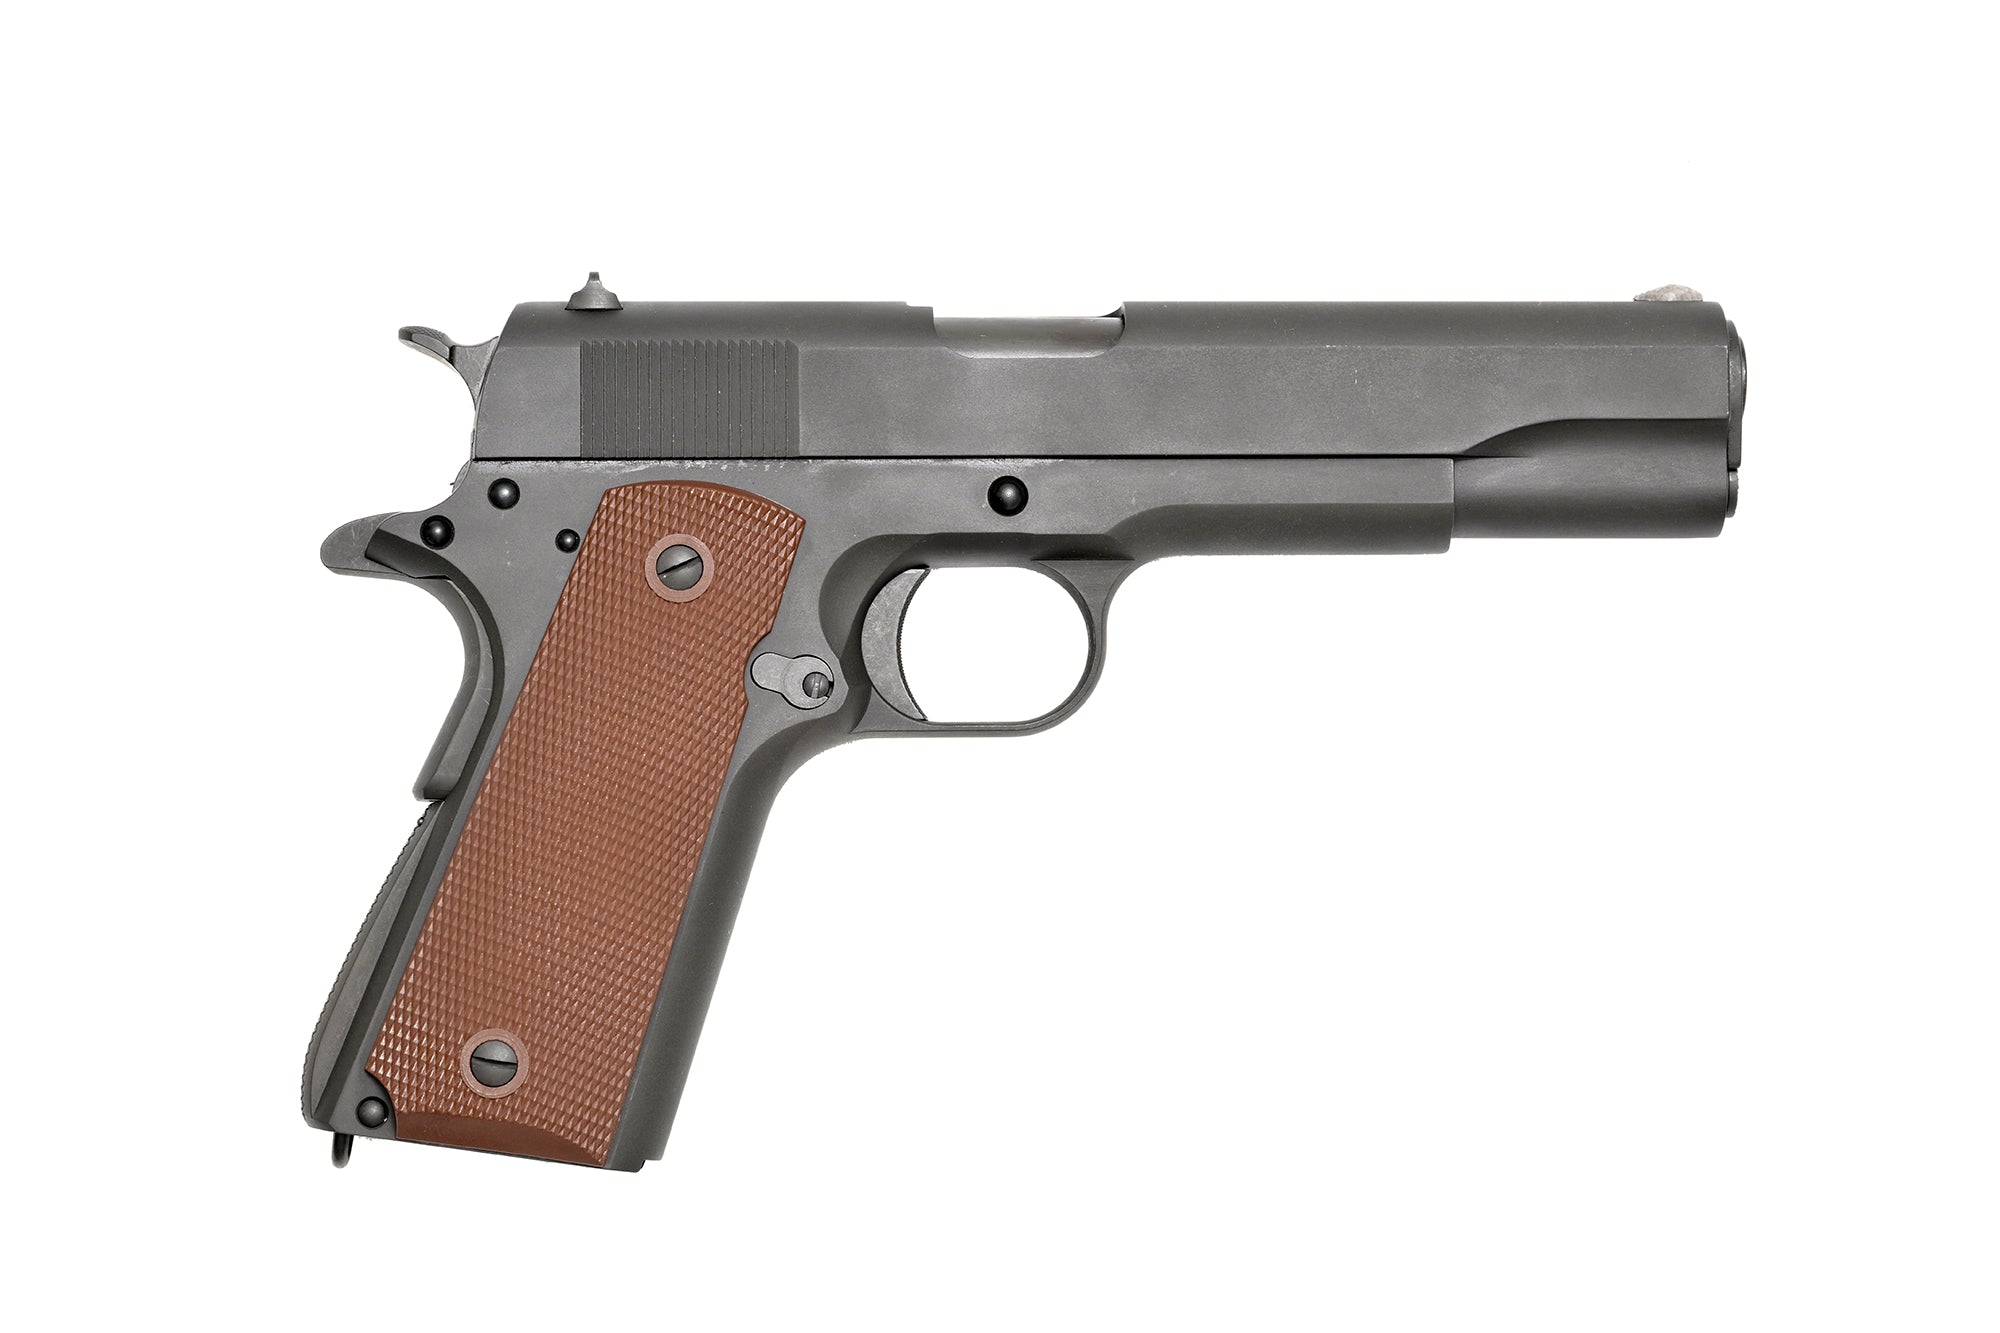 GBLS DAS M1911A1 Full Steel Pistol